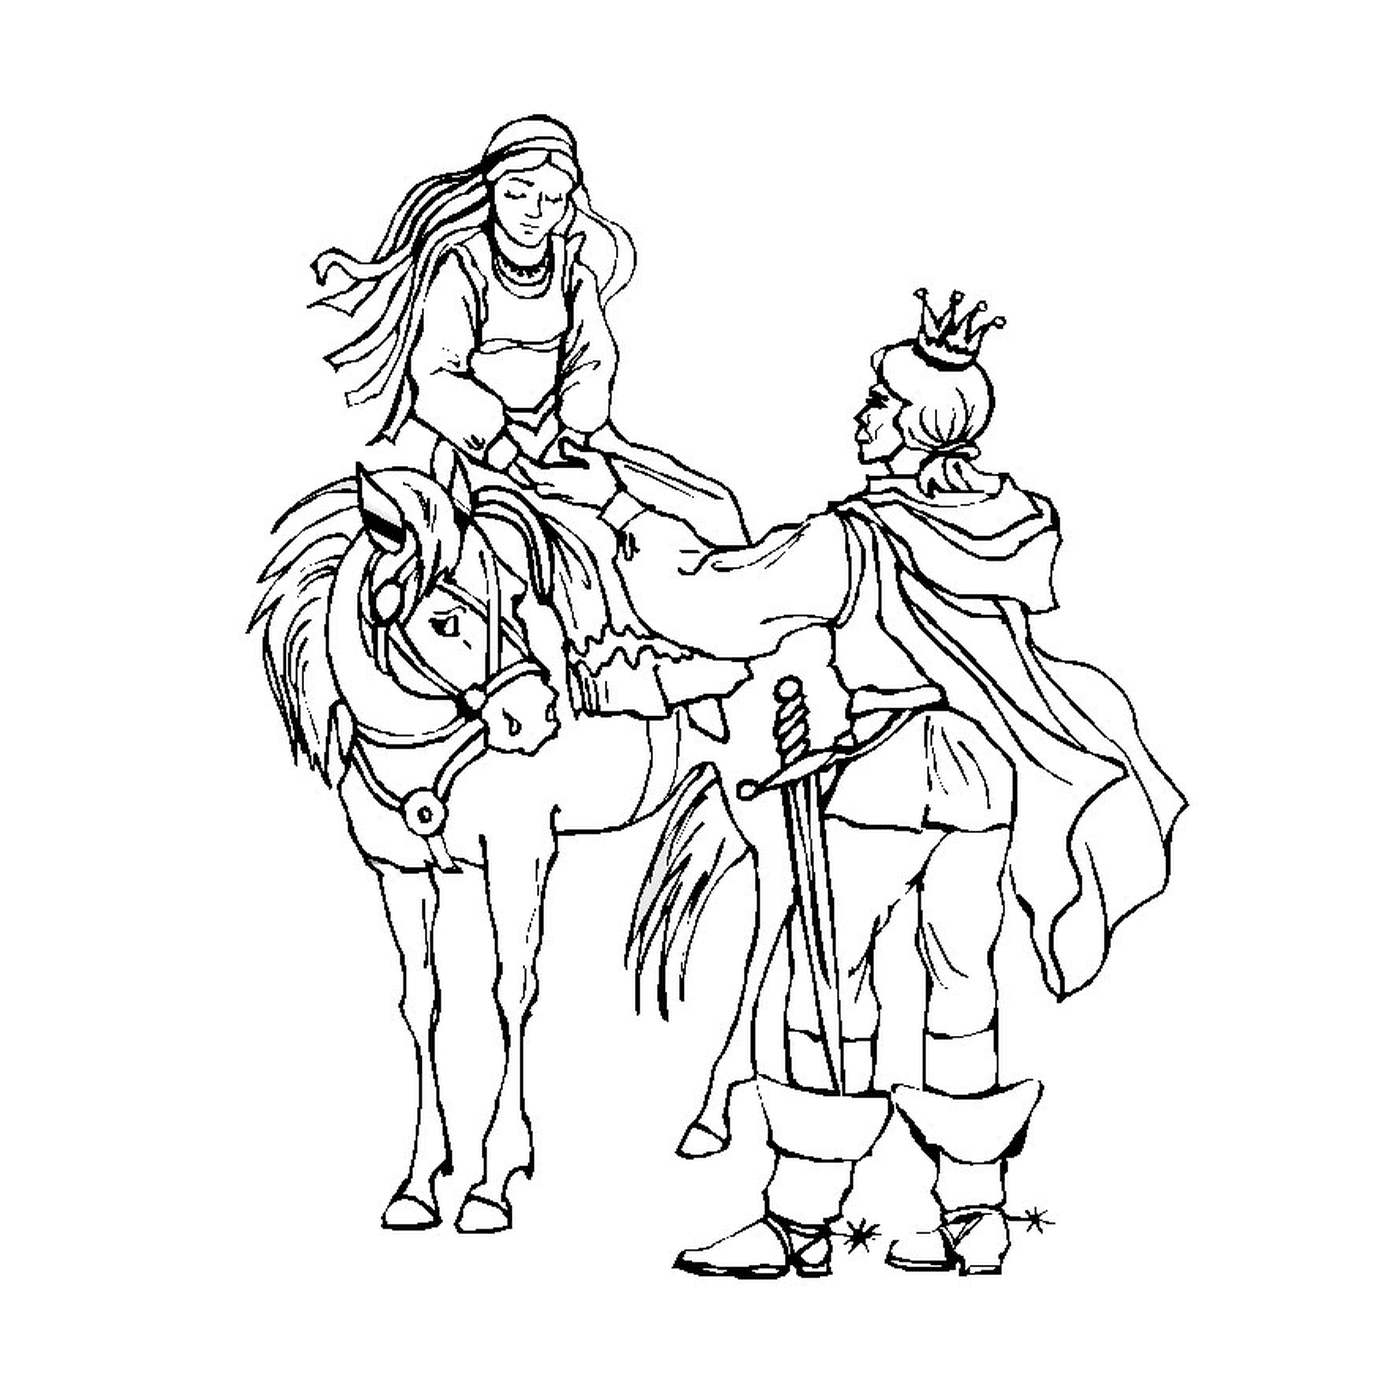  Royal couple riding a horse proudly 